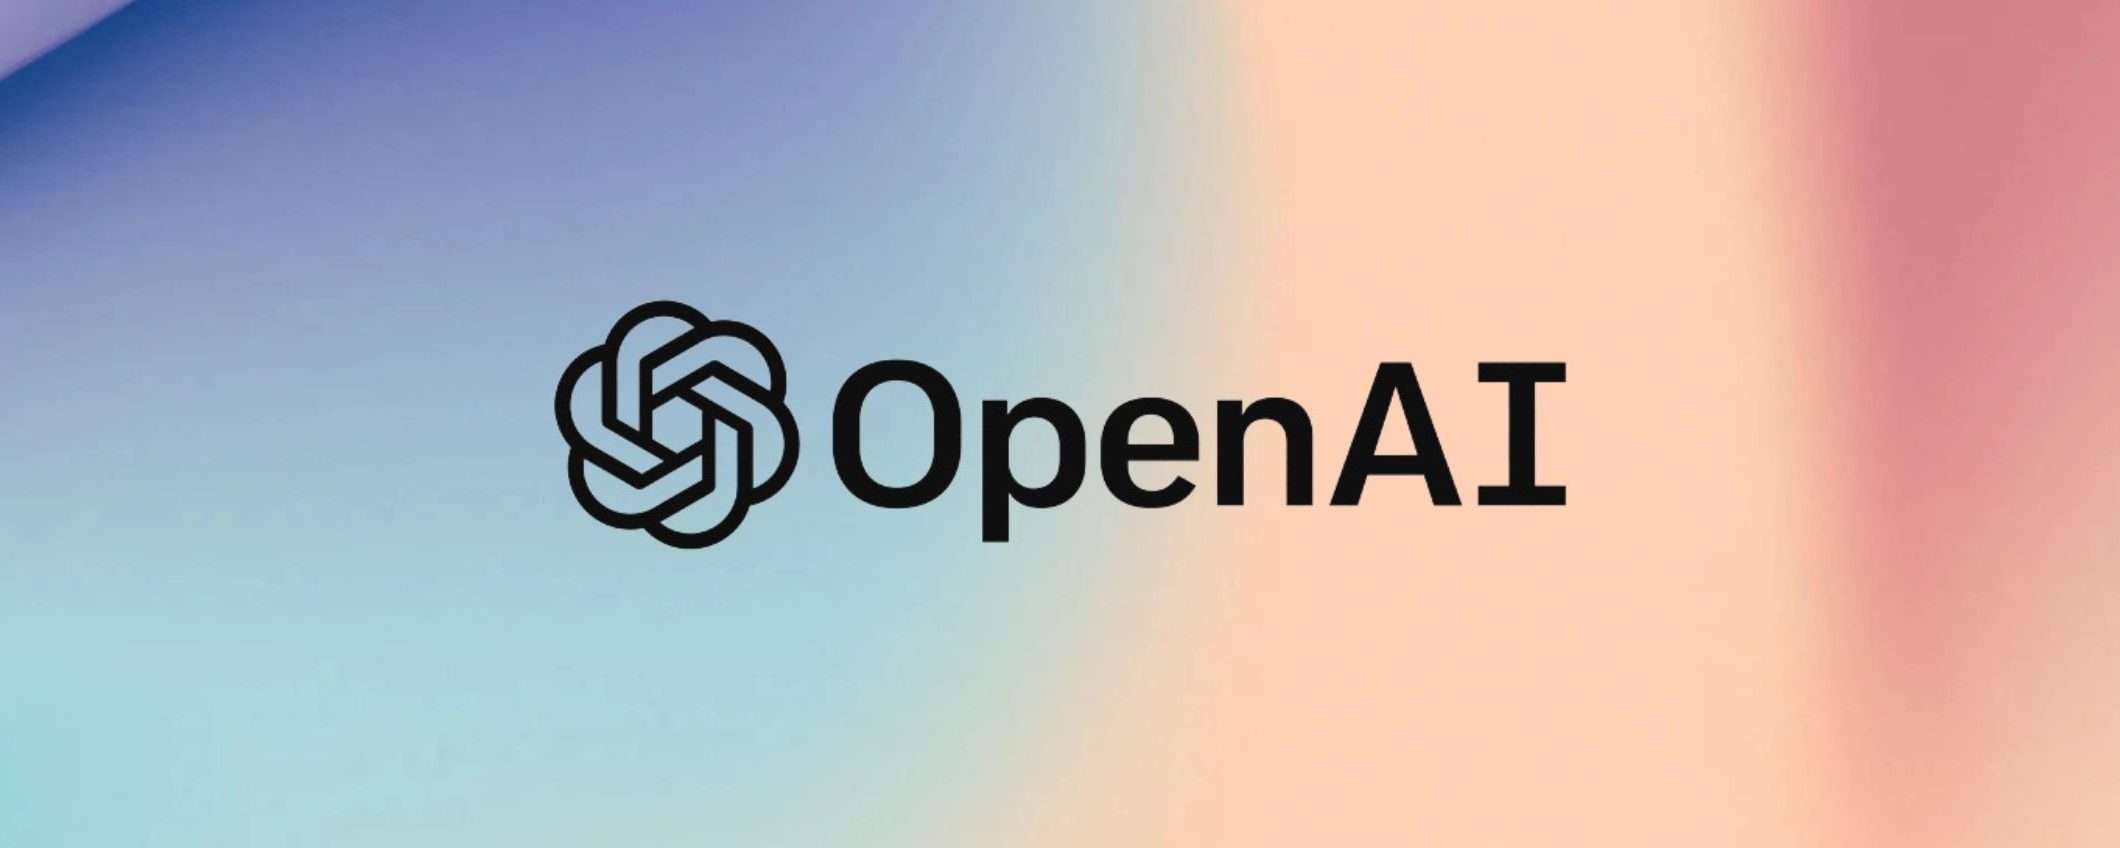 OpenAI permette di escludere contenuti dall'addestramento dell'AI